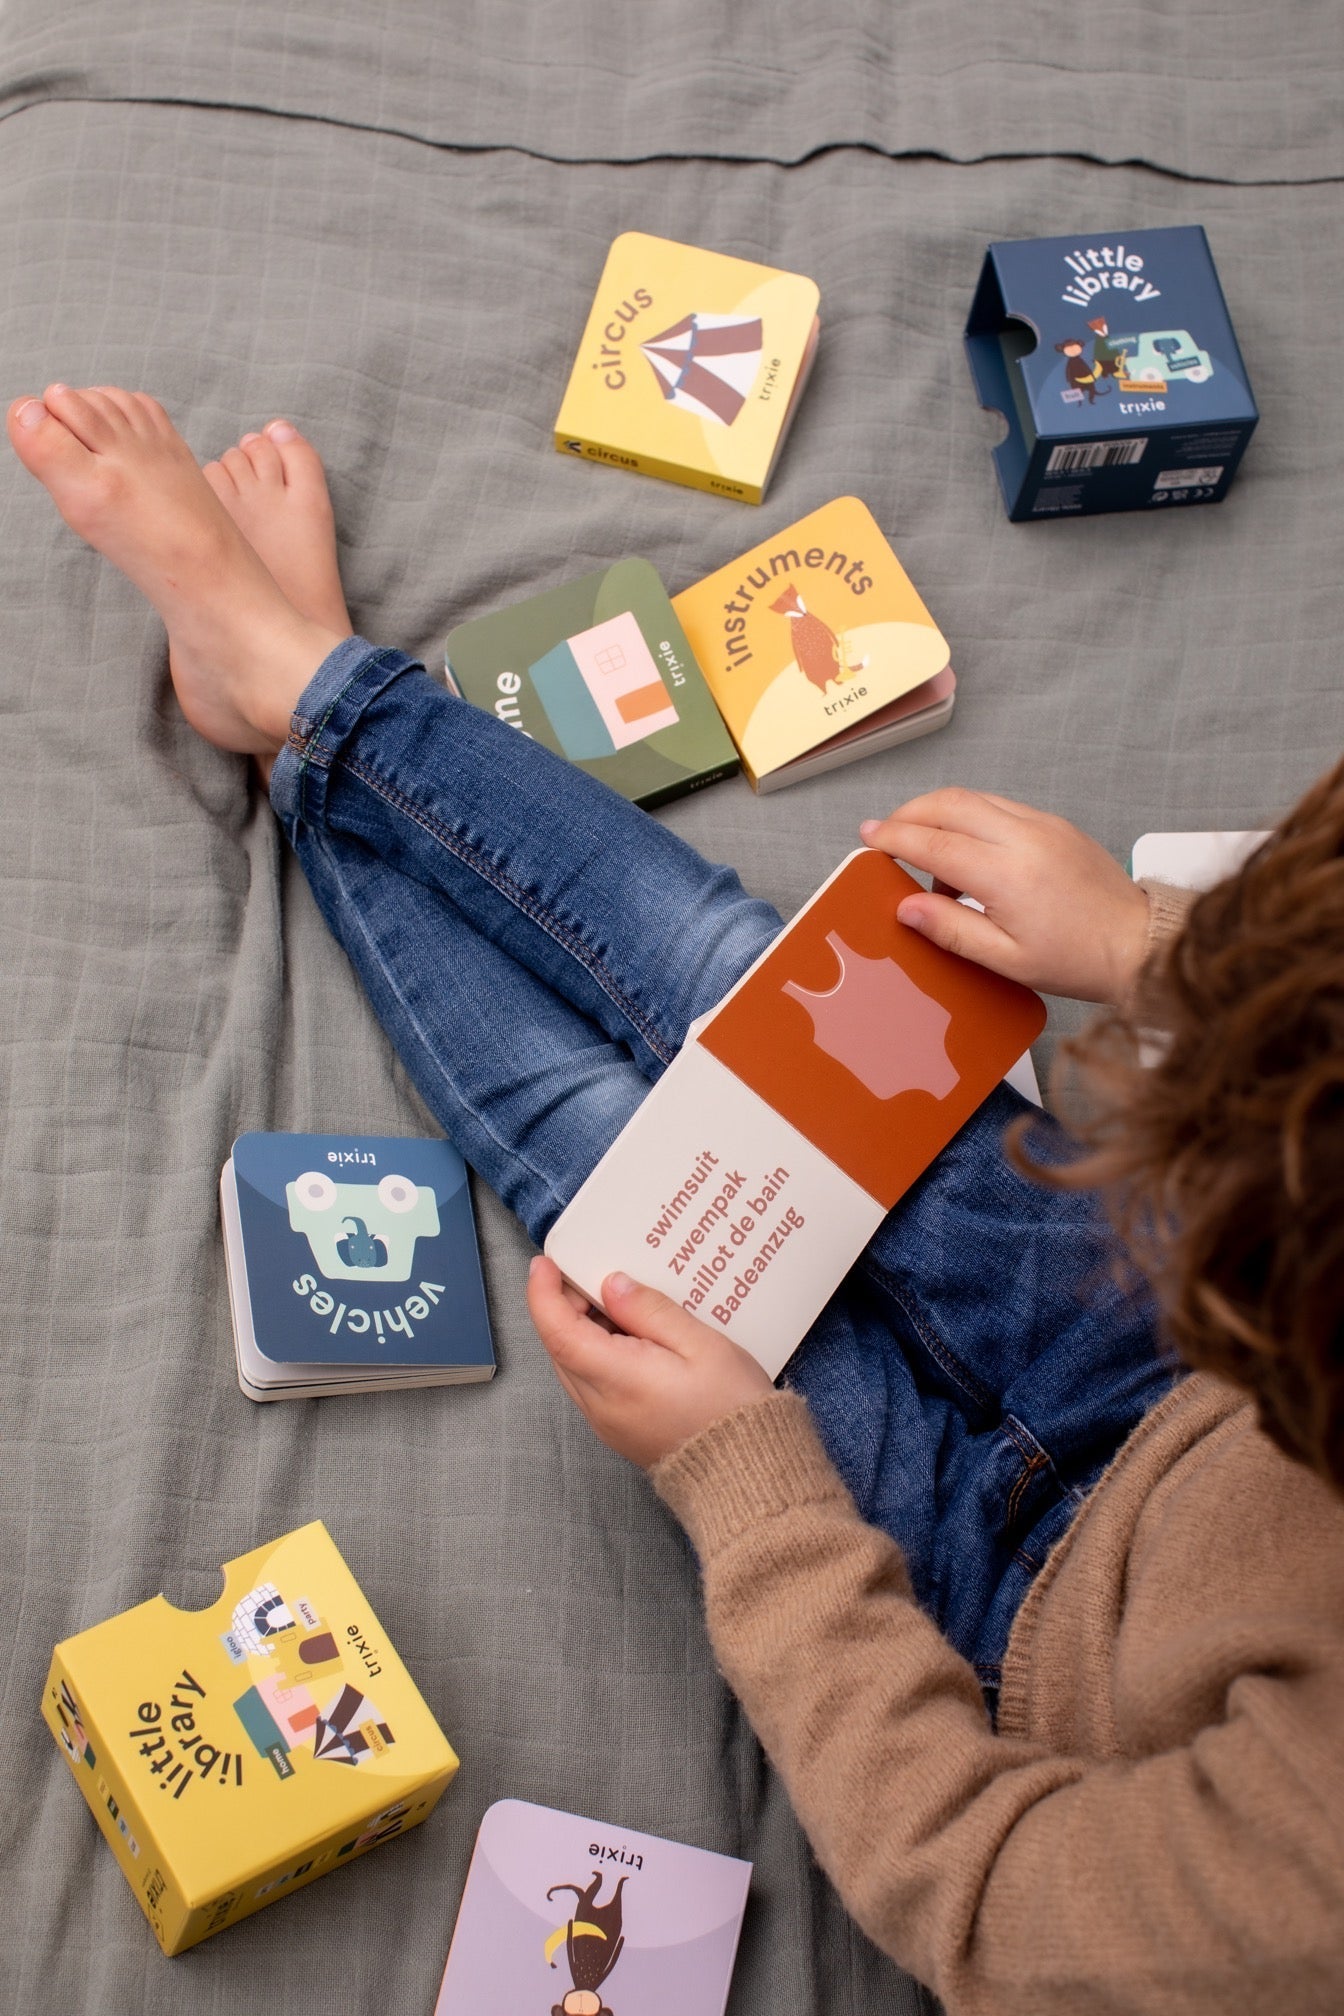 Trixie Entzückende Kleine Bibliothek für Minis - Lerne Wörter mit Spaß! 📚🍎🚗🎸